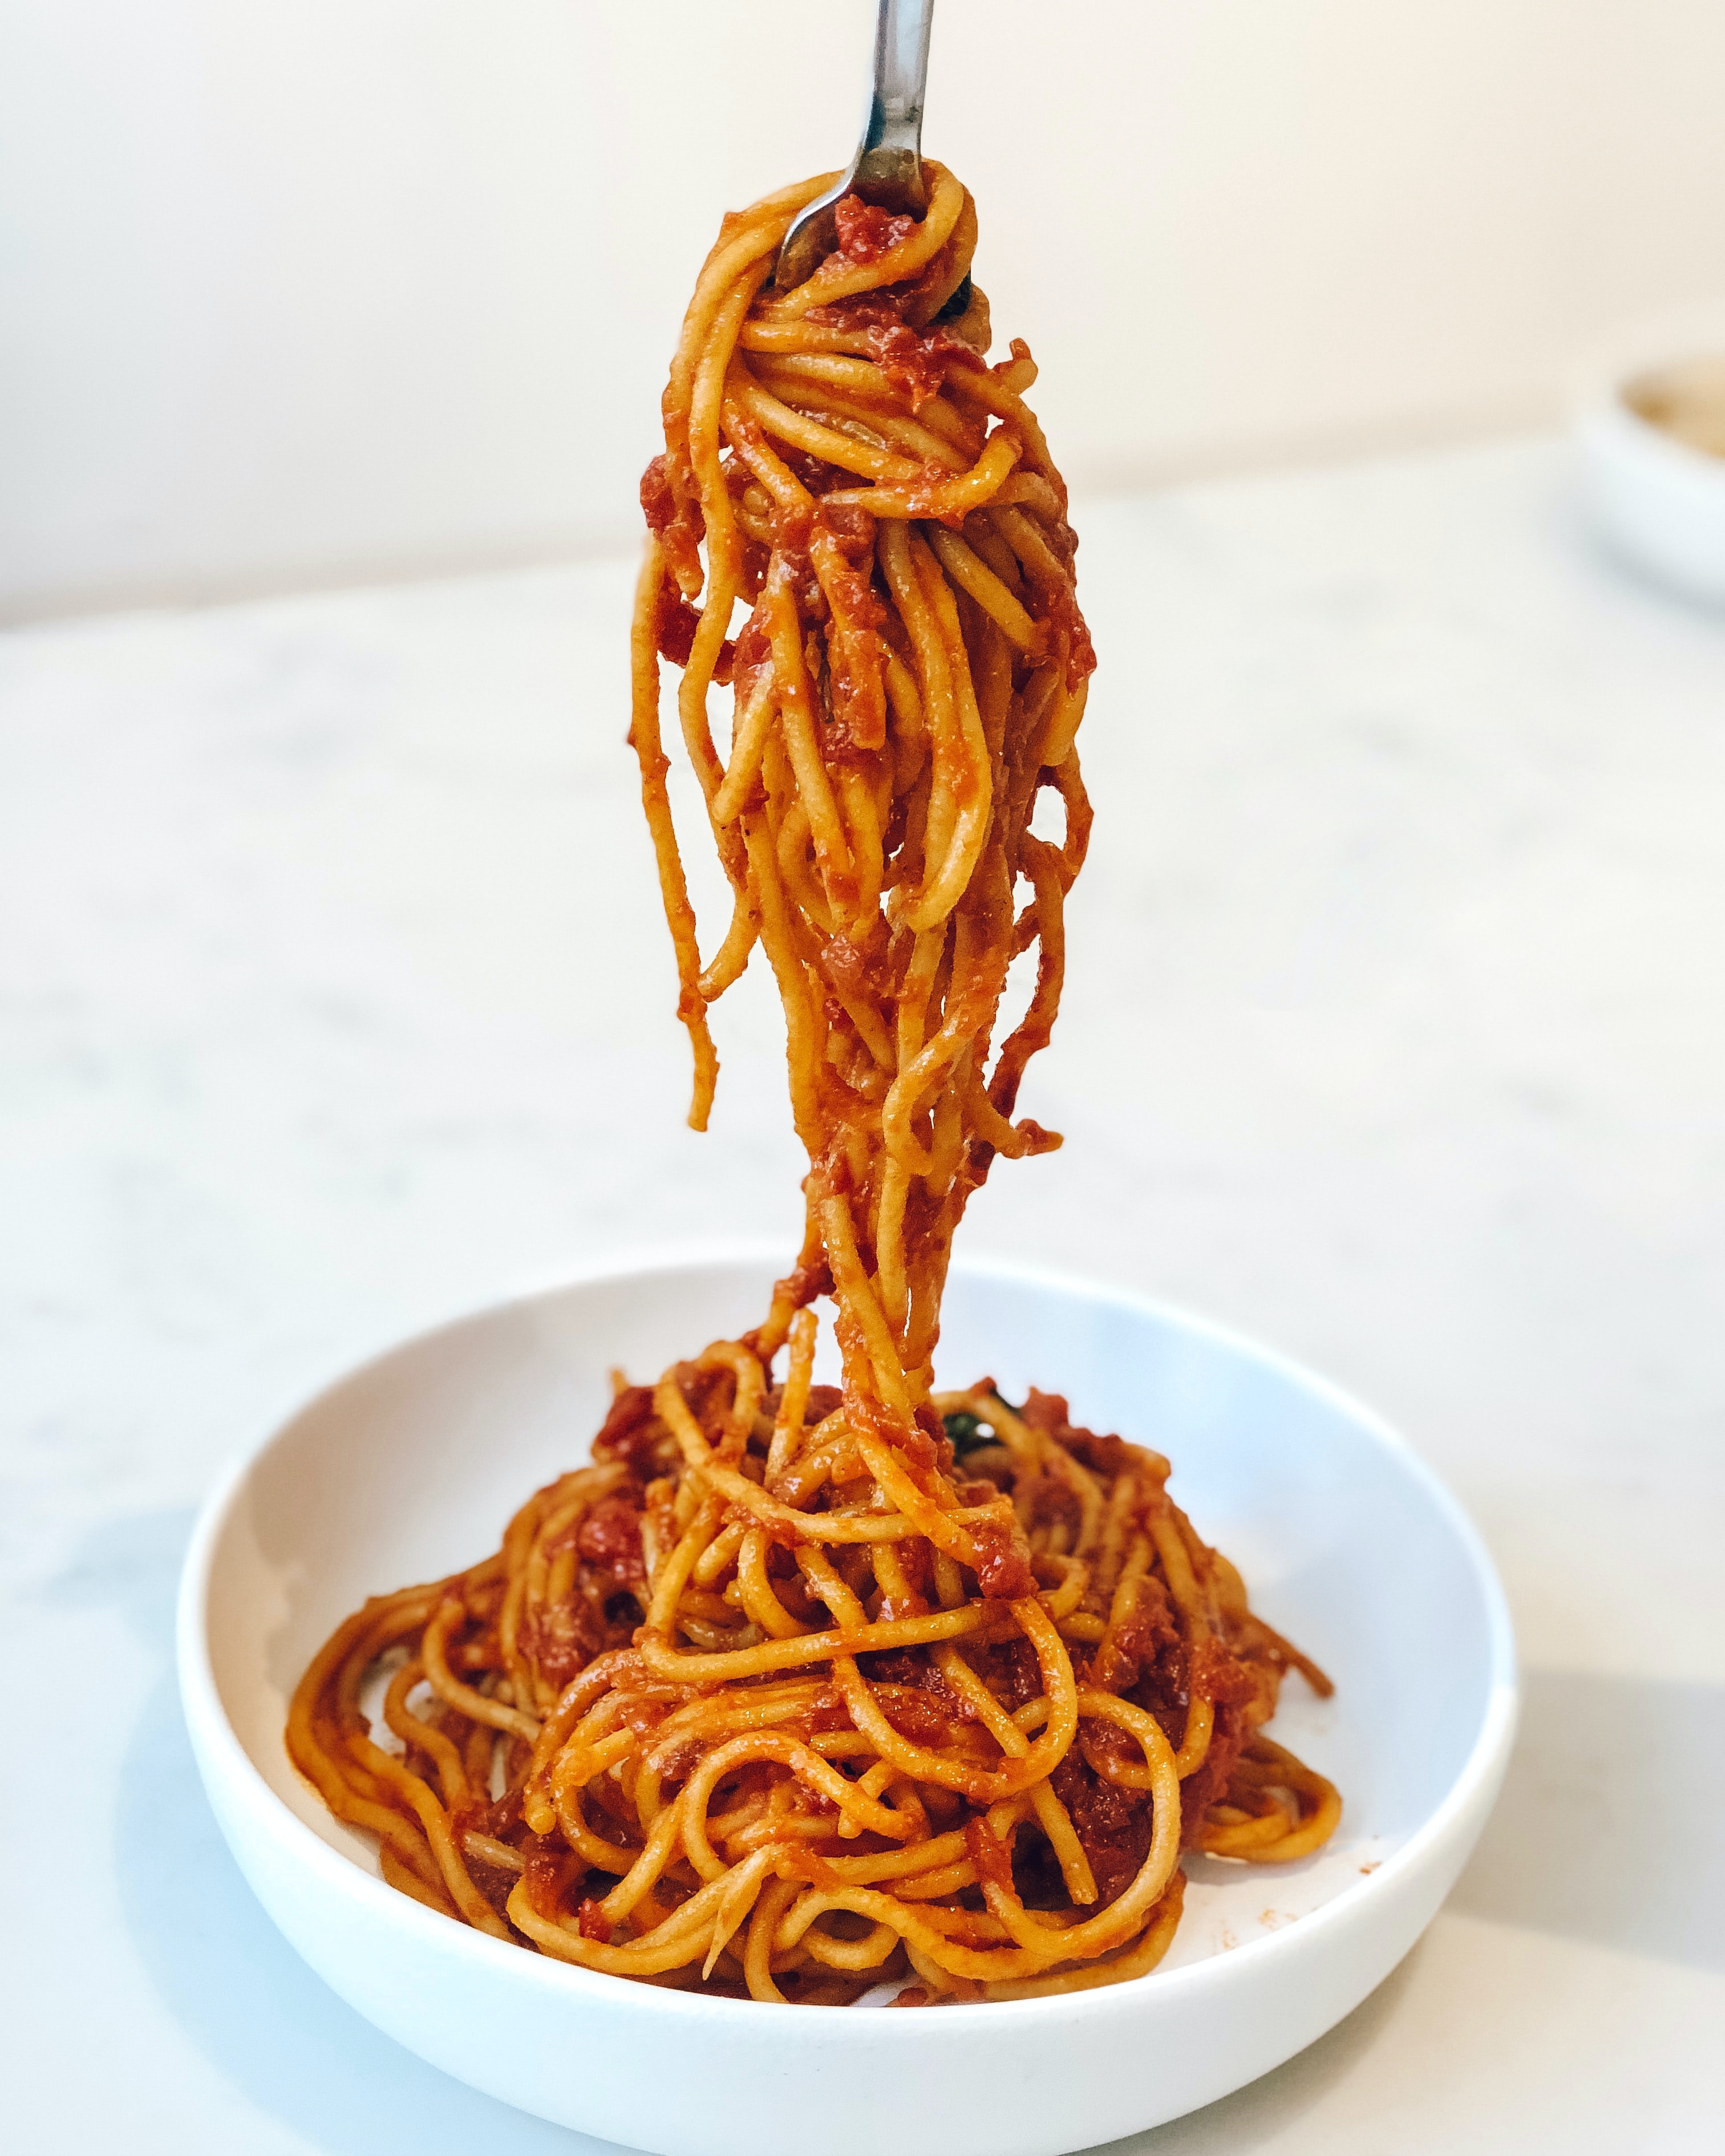 spaghetti bolognese as Autumn comfort food